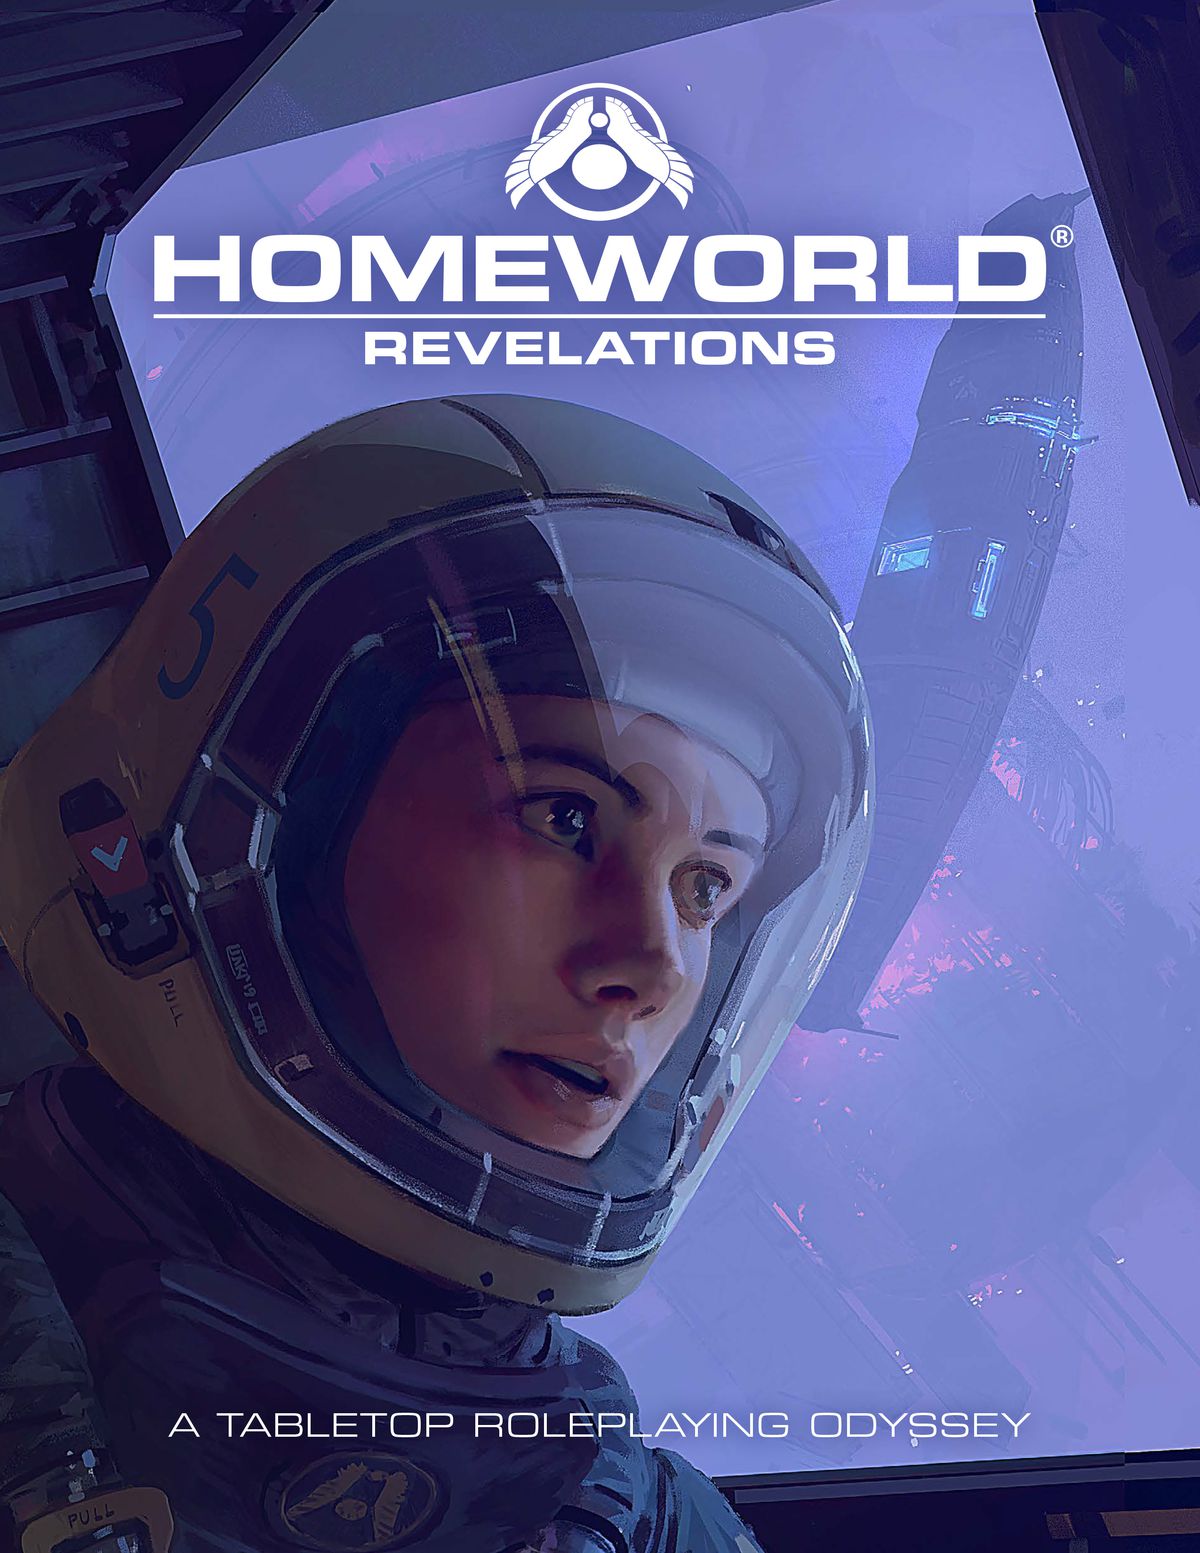 Titelbild und Logo für Homeworld: Revelations Kernregelbuch.